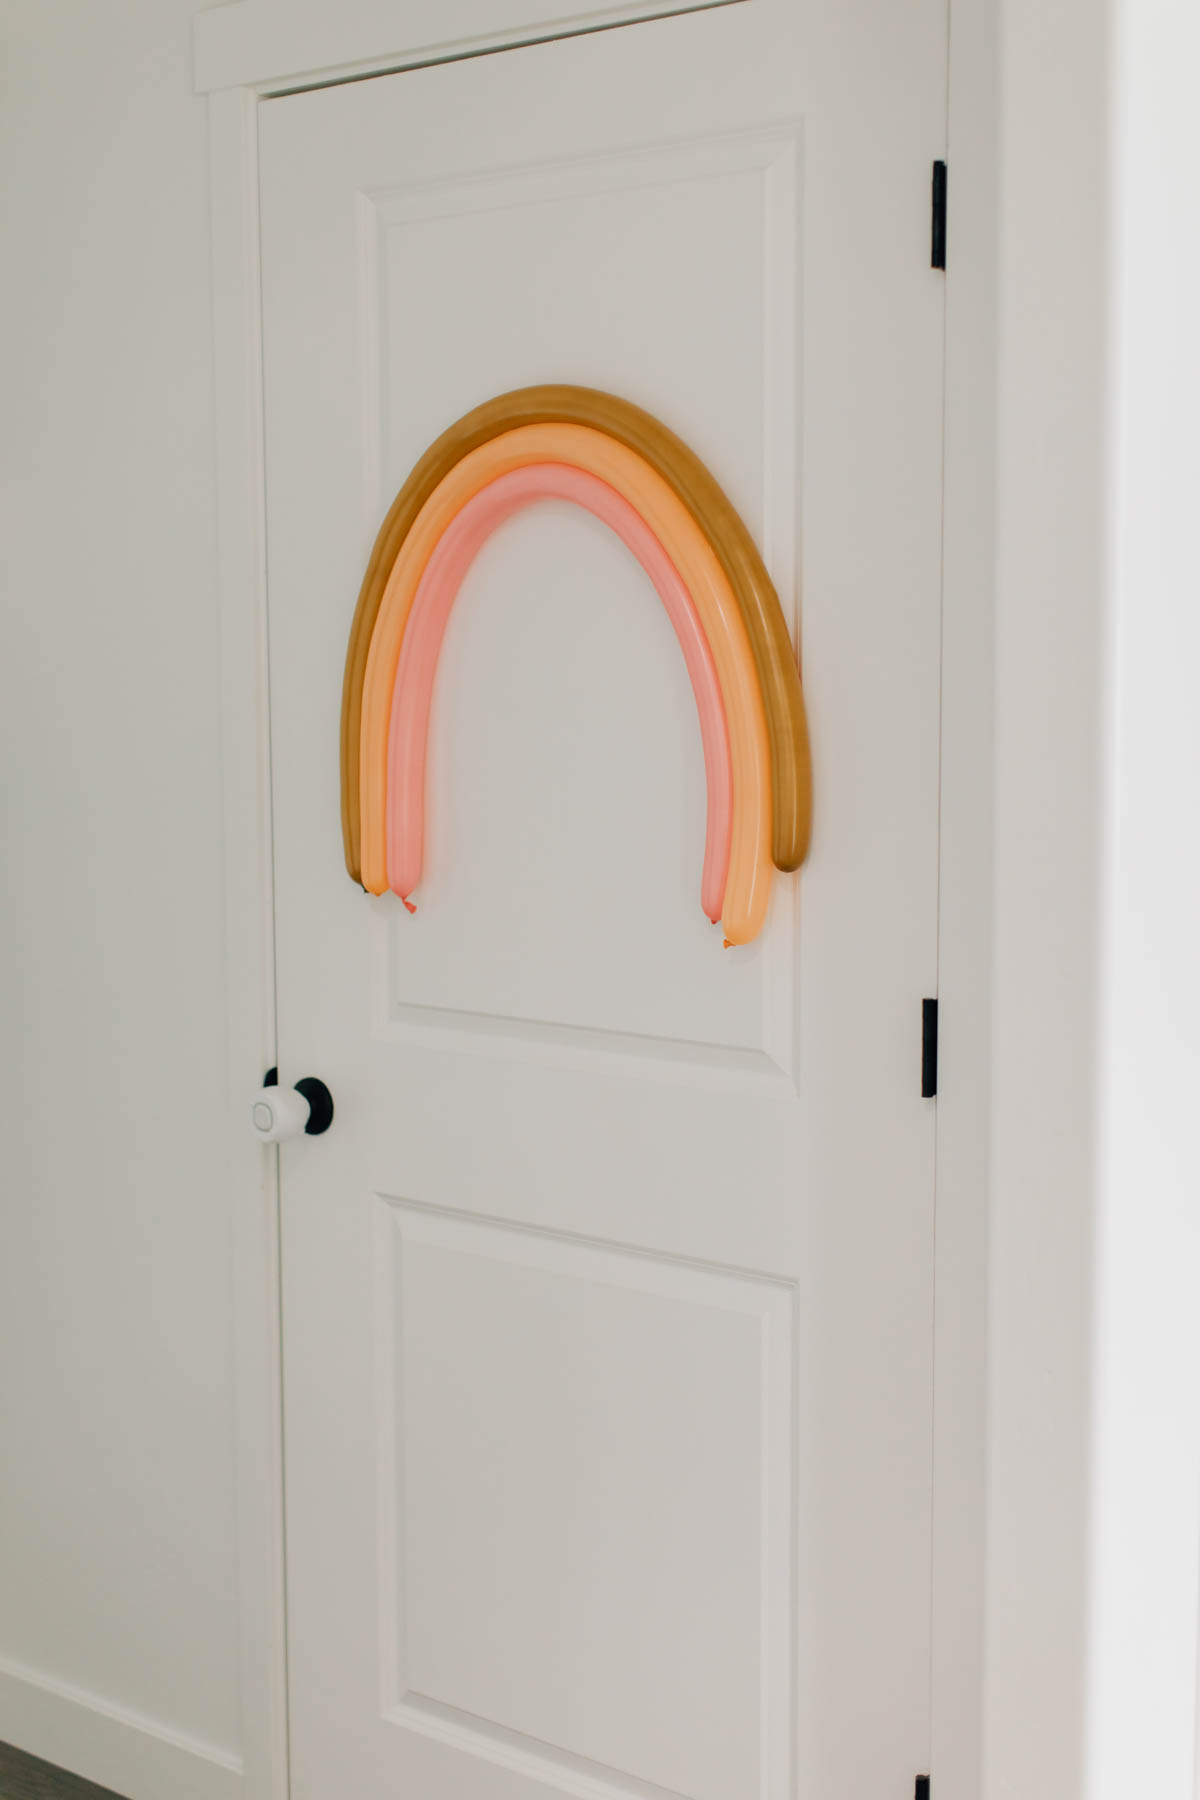 Tan and pink balloon rainbow on white door.